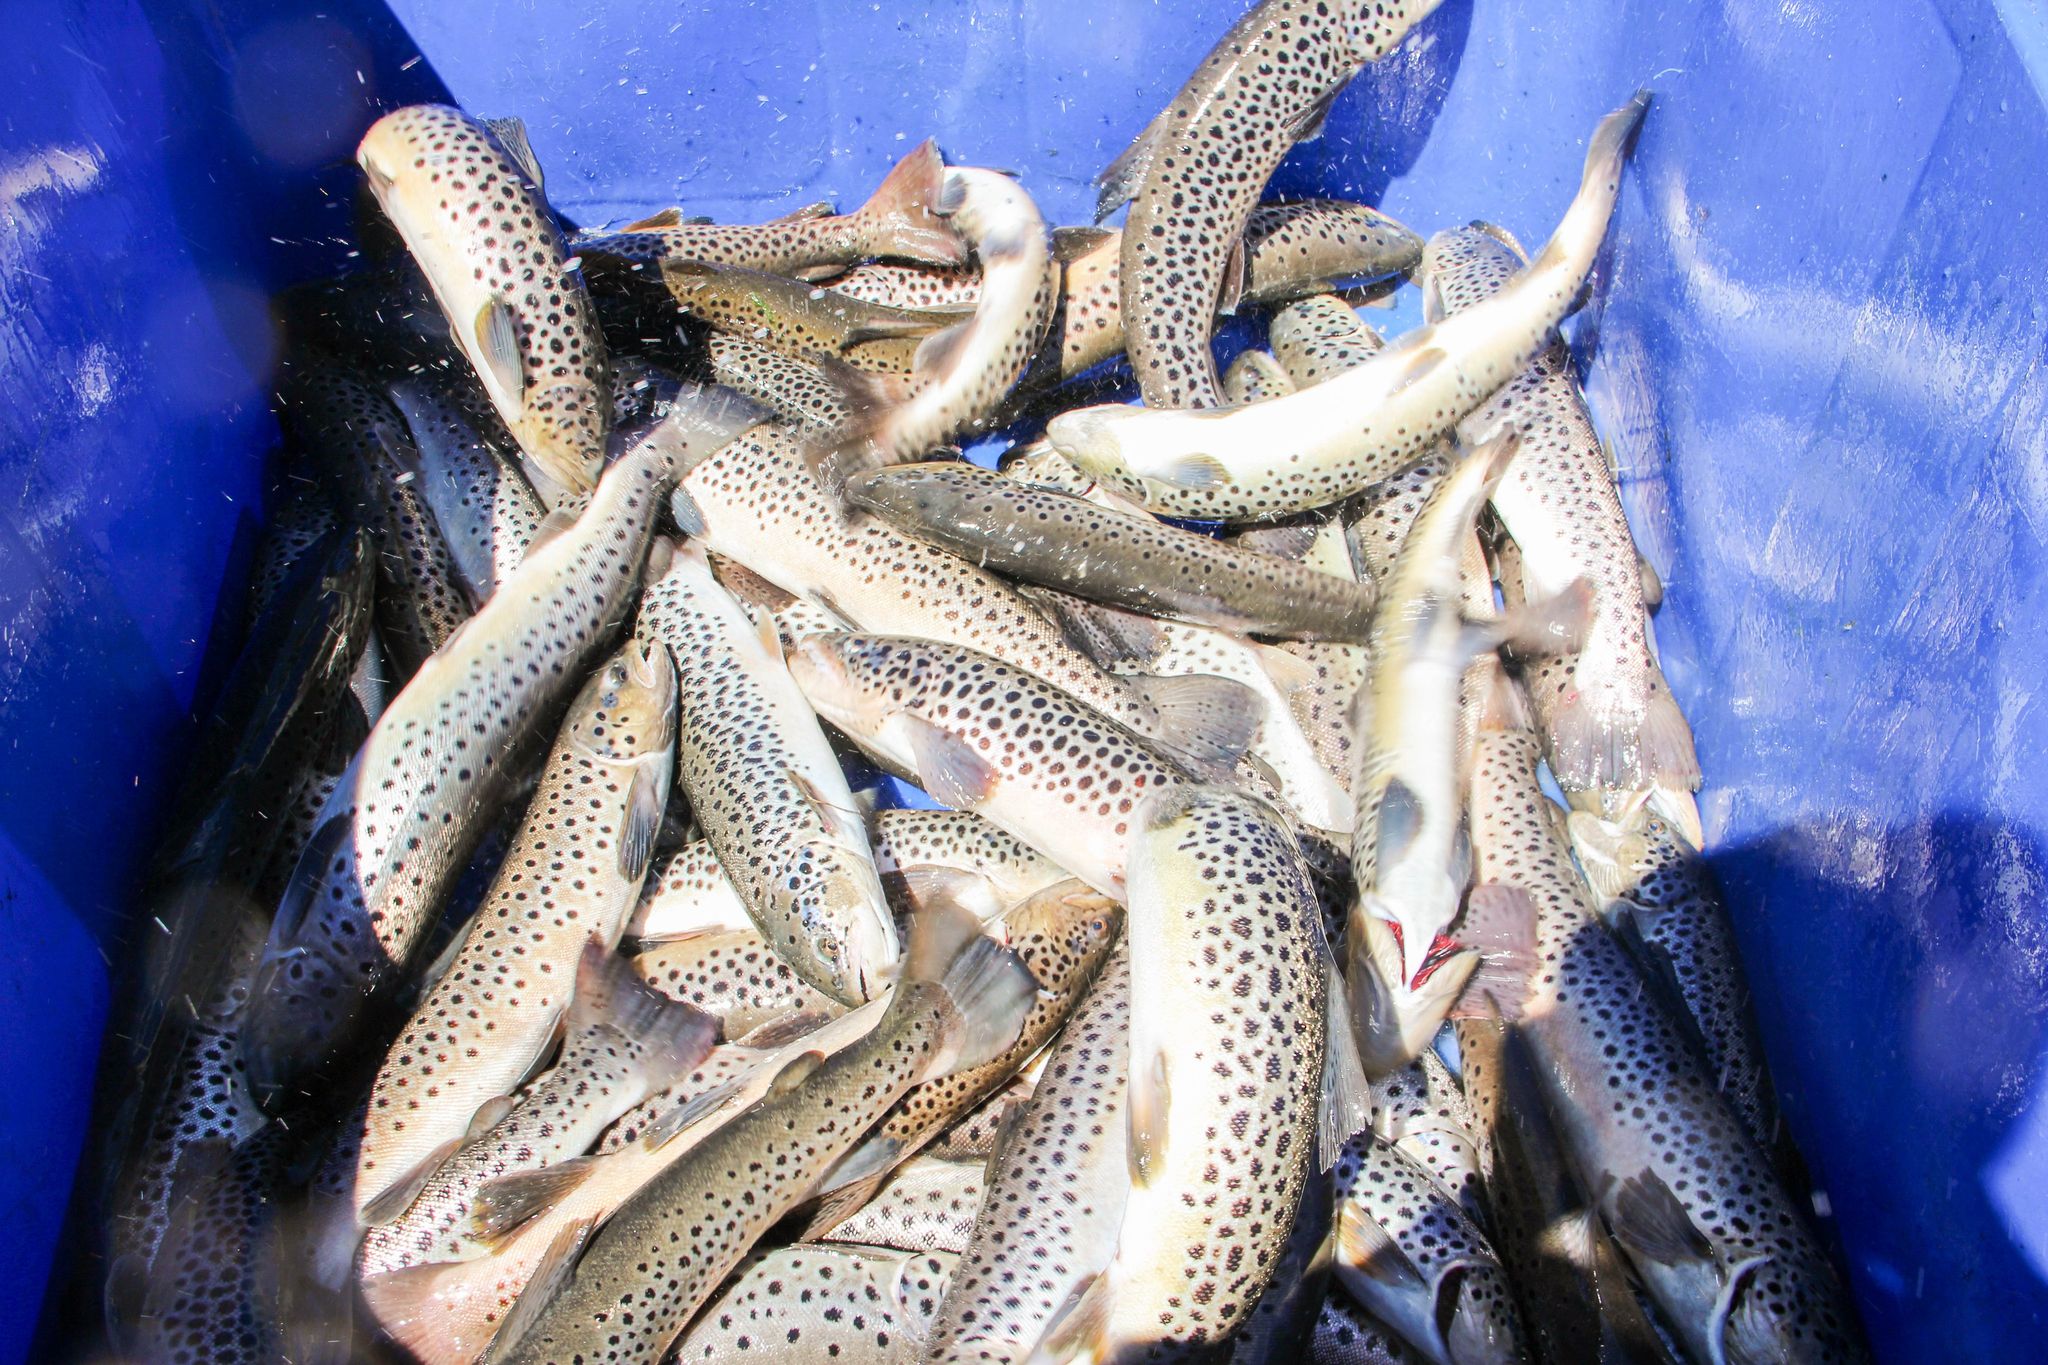 ԵԱՏՄ-ում գործող ձկնաբուծարանների, այդ թվում՝ ՀՀ-ի ծախսերը մասամբ կփոխհատուցվեն